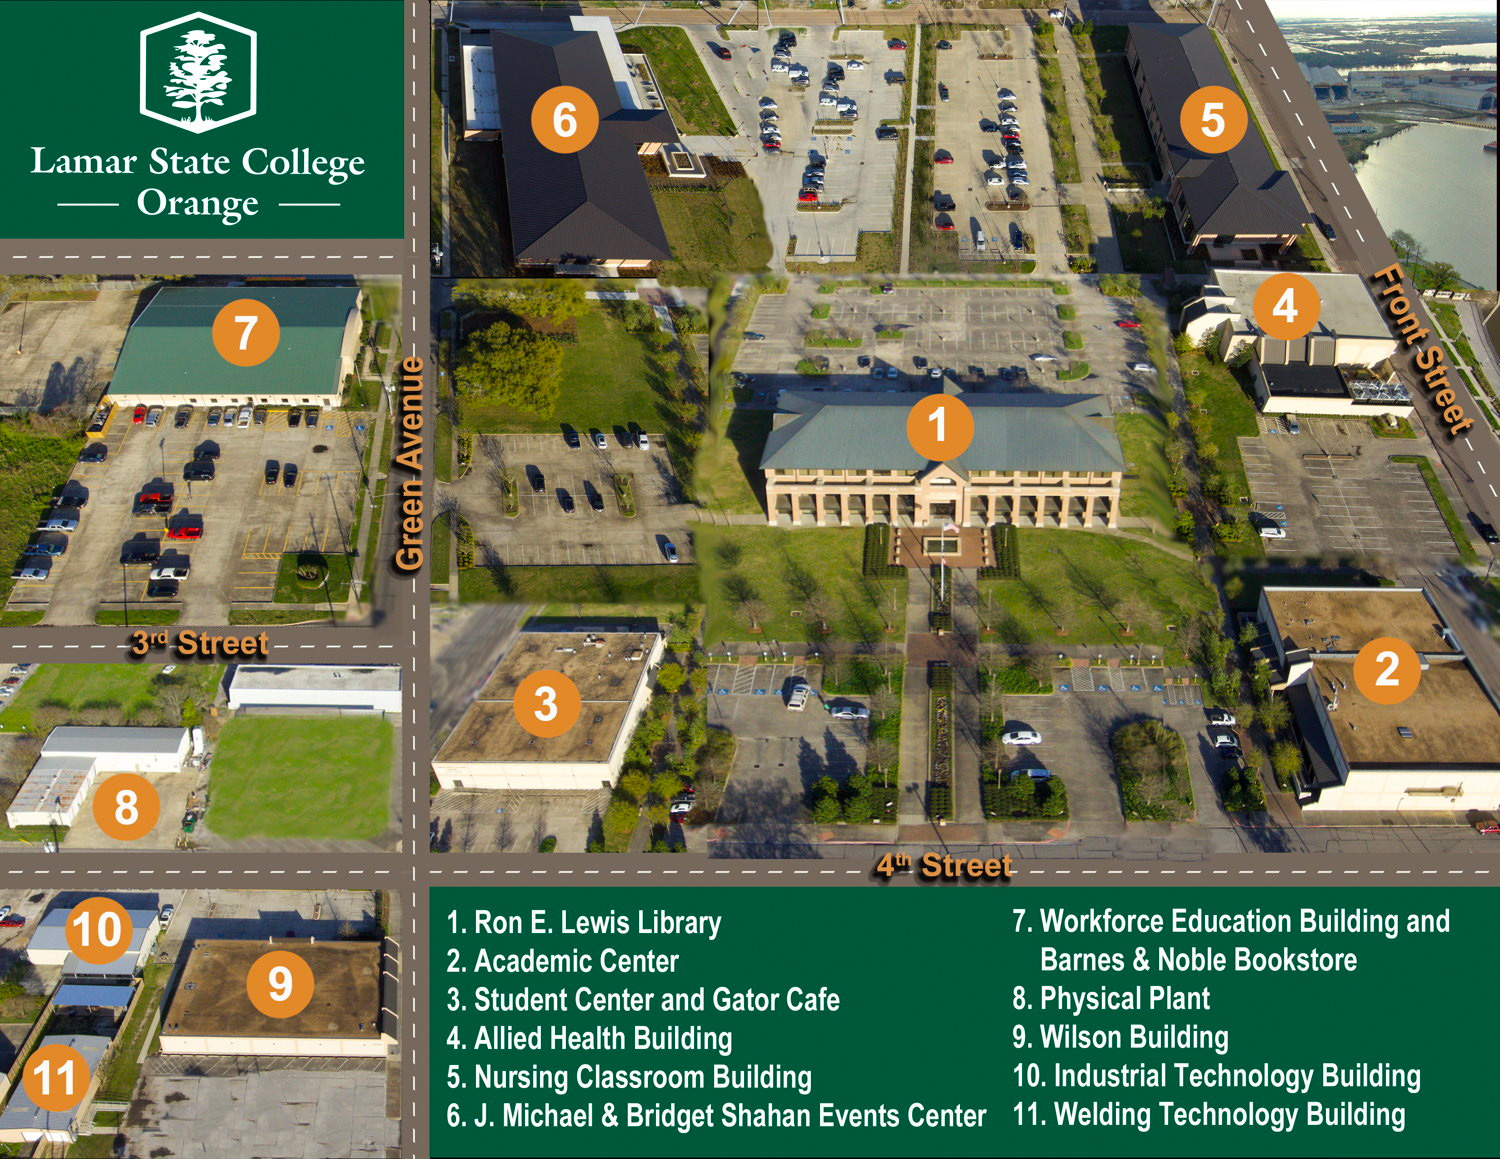 Lamar State College Orange campus map